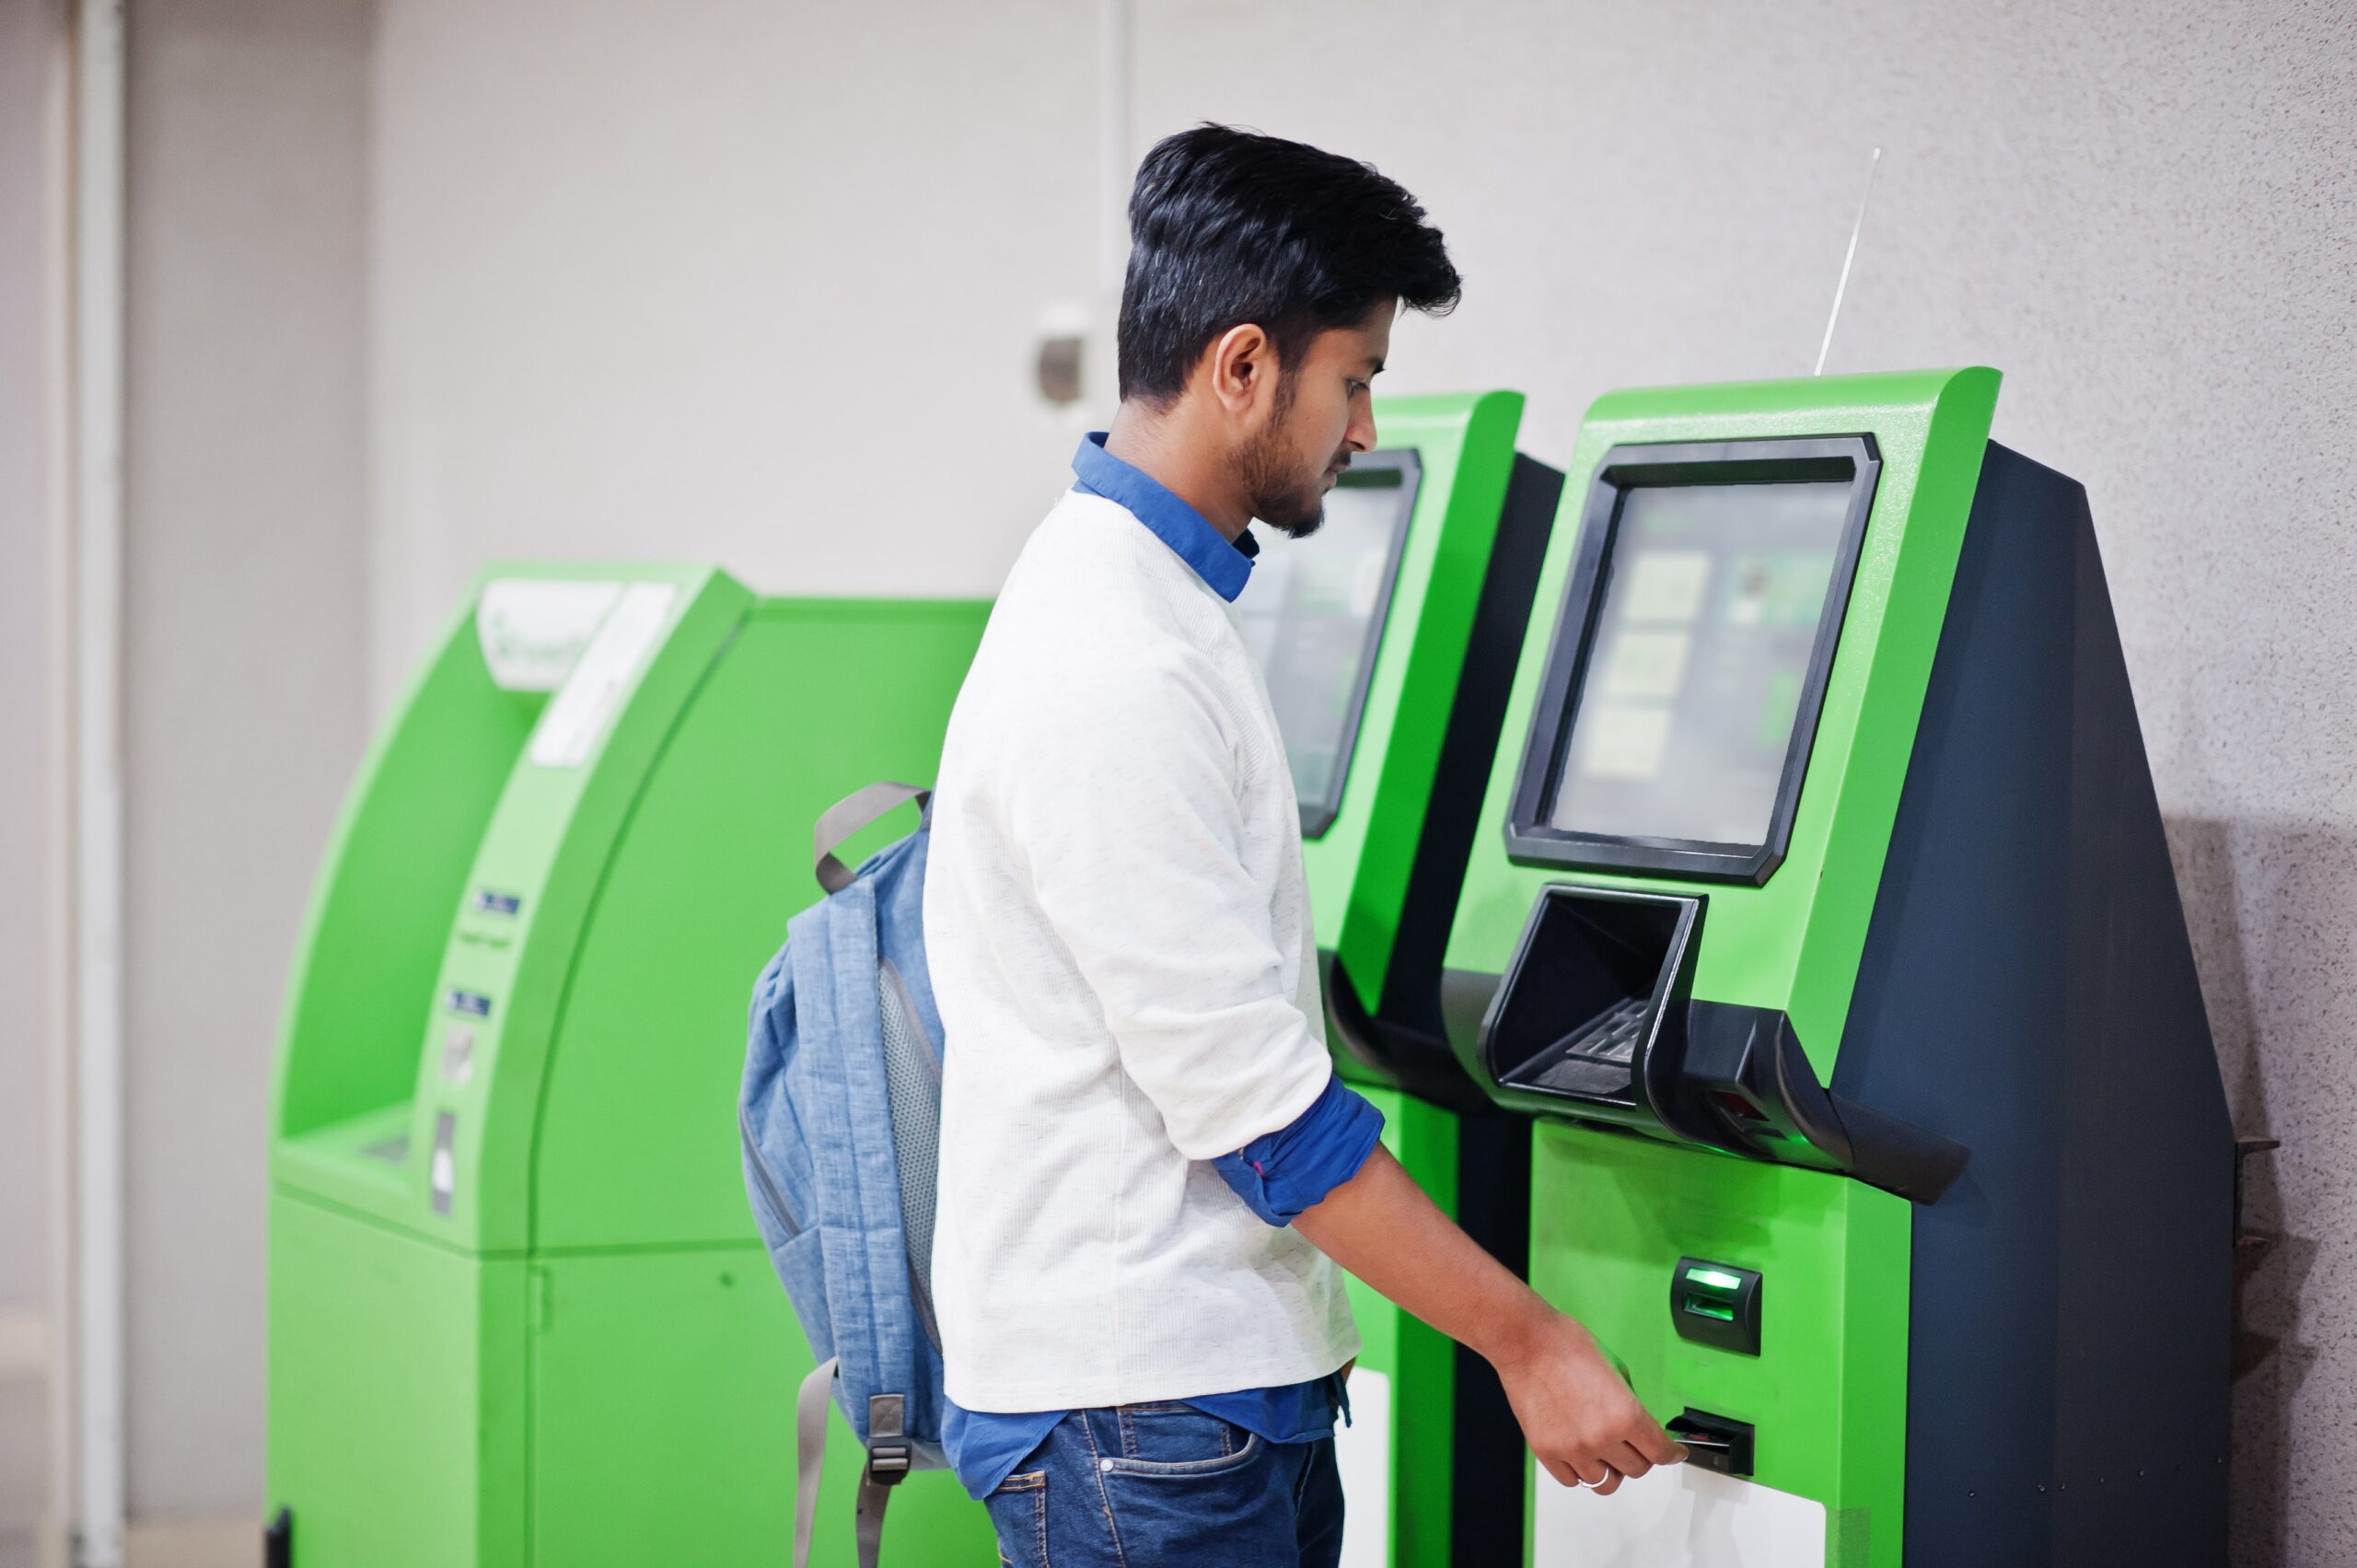 Buy ATM Card Reader Hurst